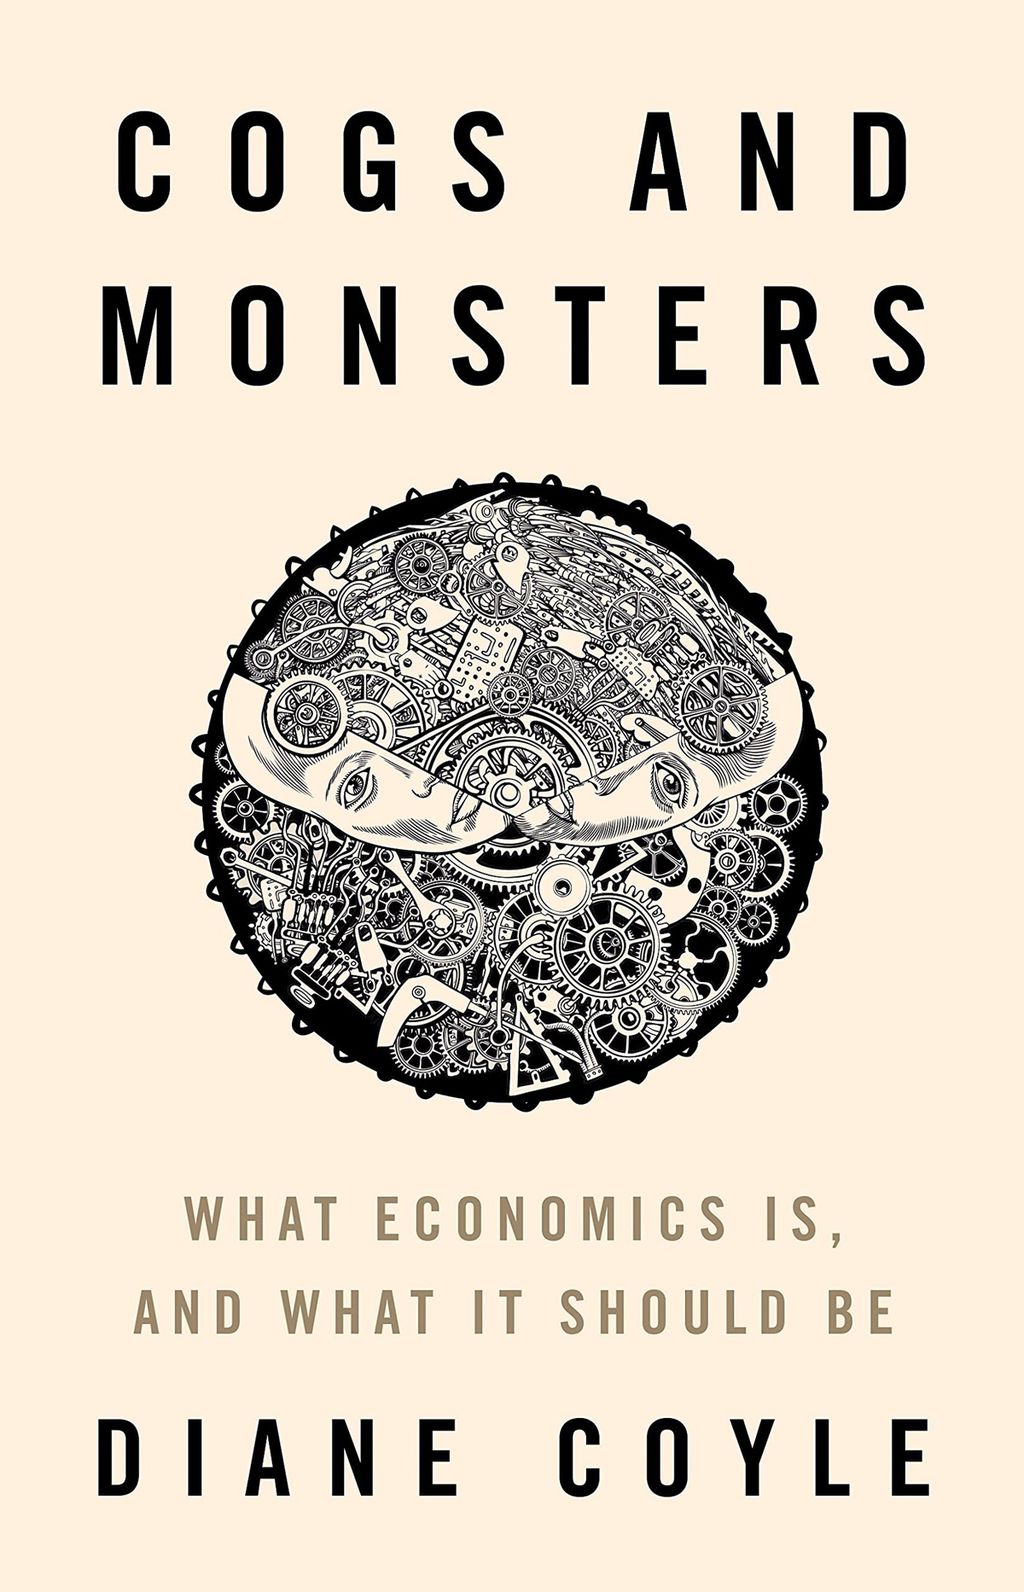 Terceiro colocado entre os melhores livros de economia de 2021 critica atuação de economistas e mostra oportunidades (Imagem: Reprodução/Princeton University Press)